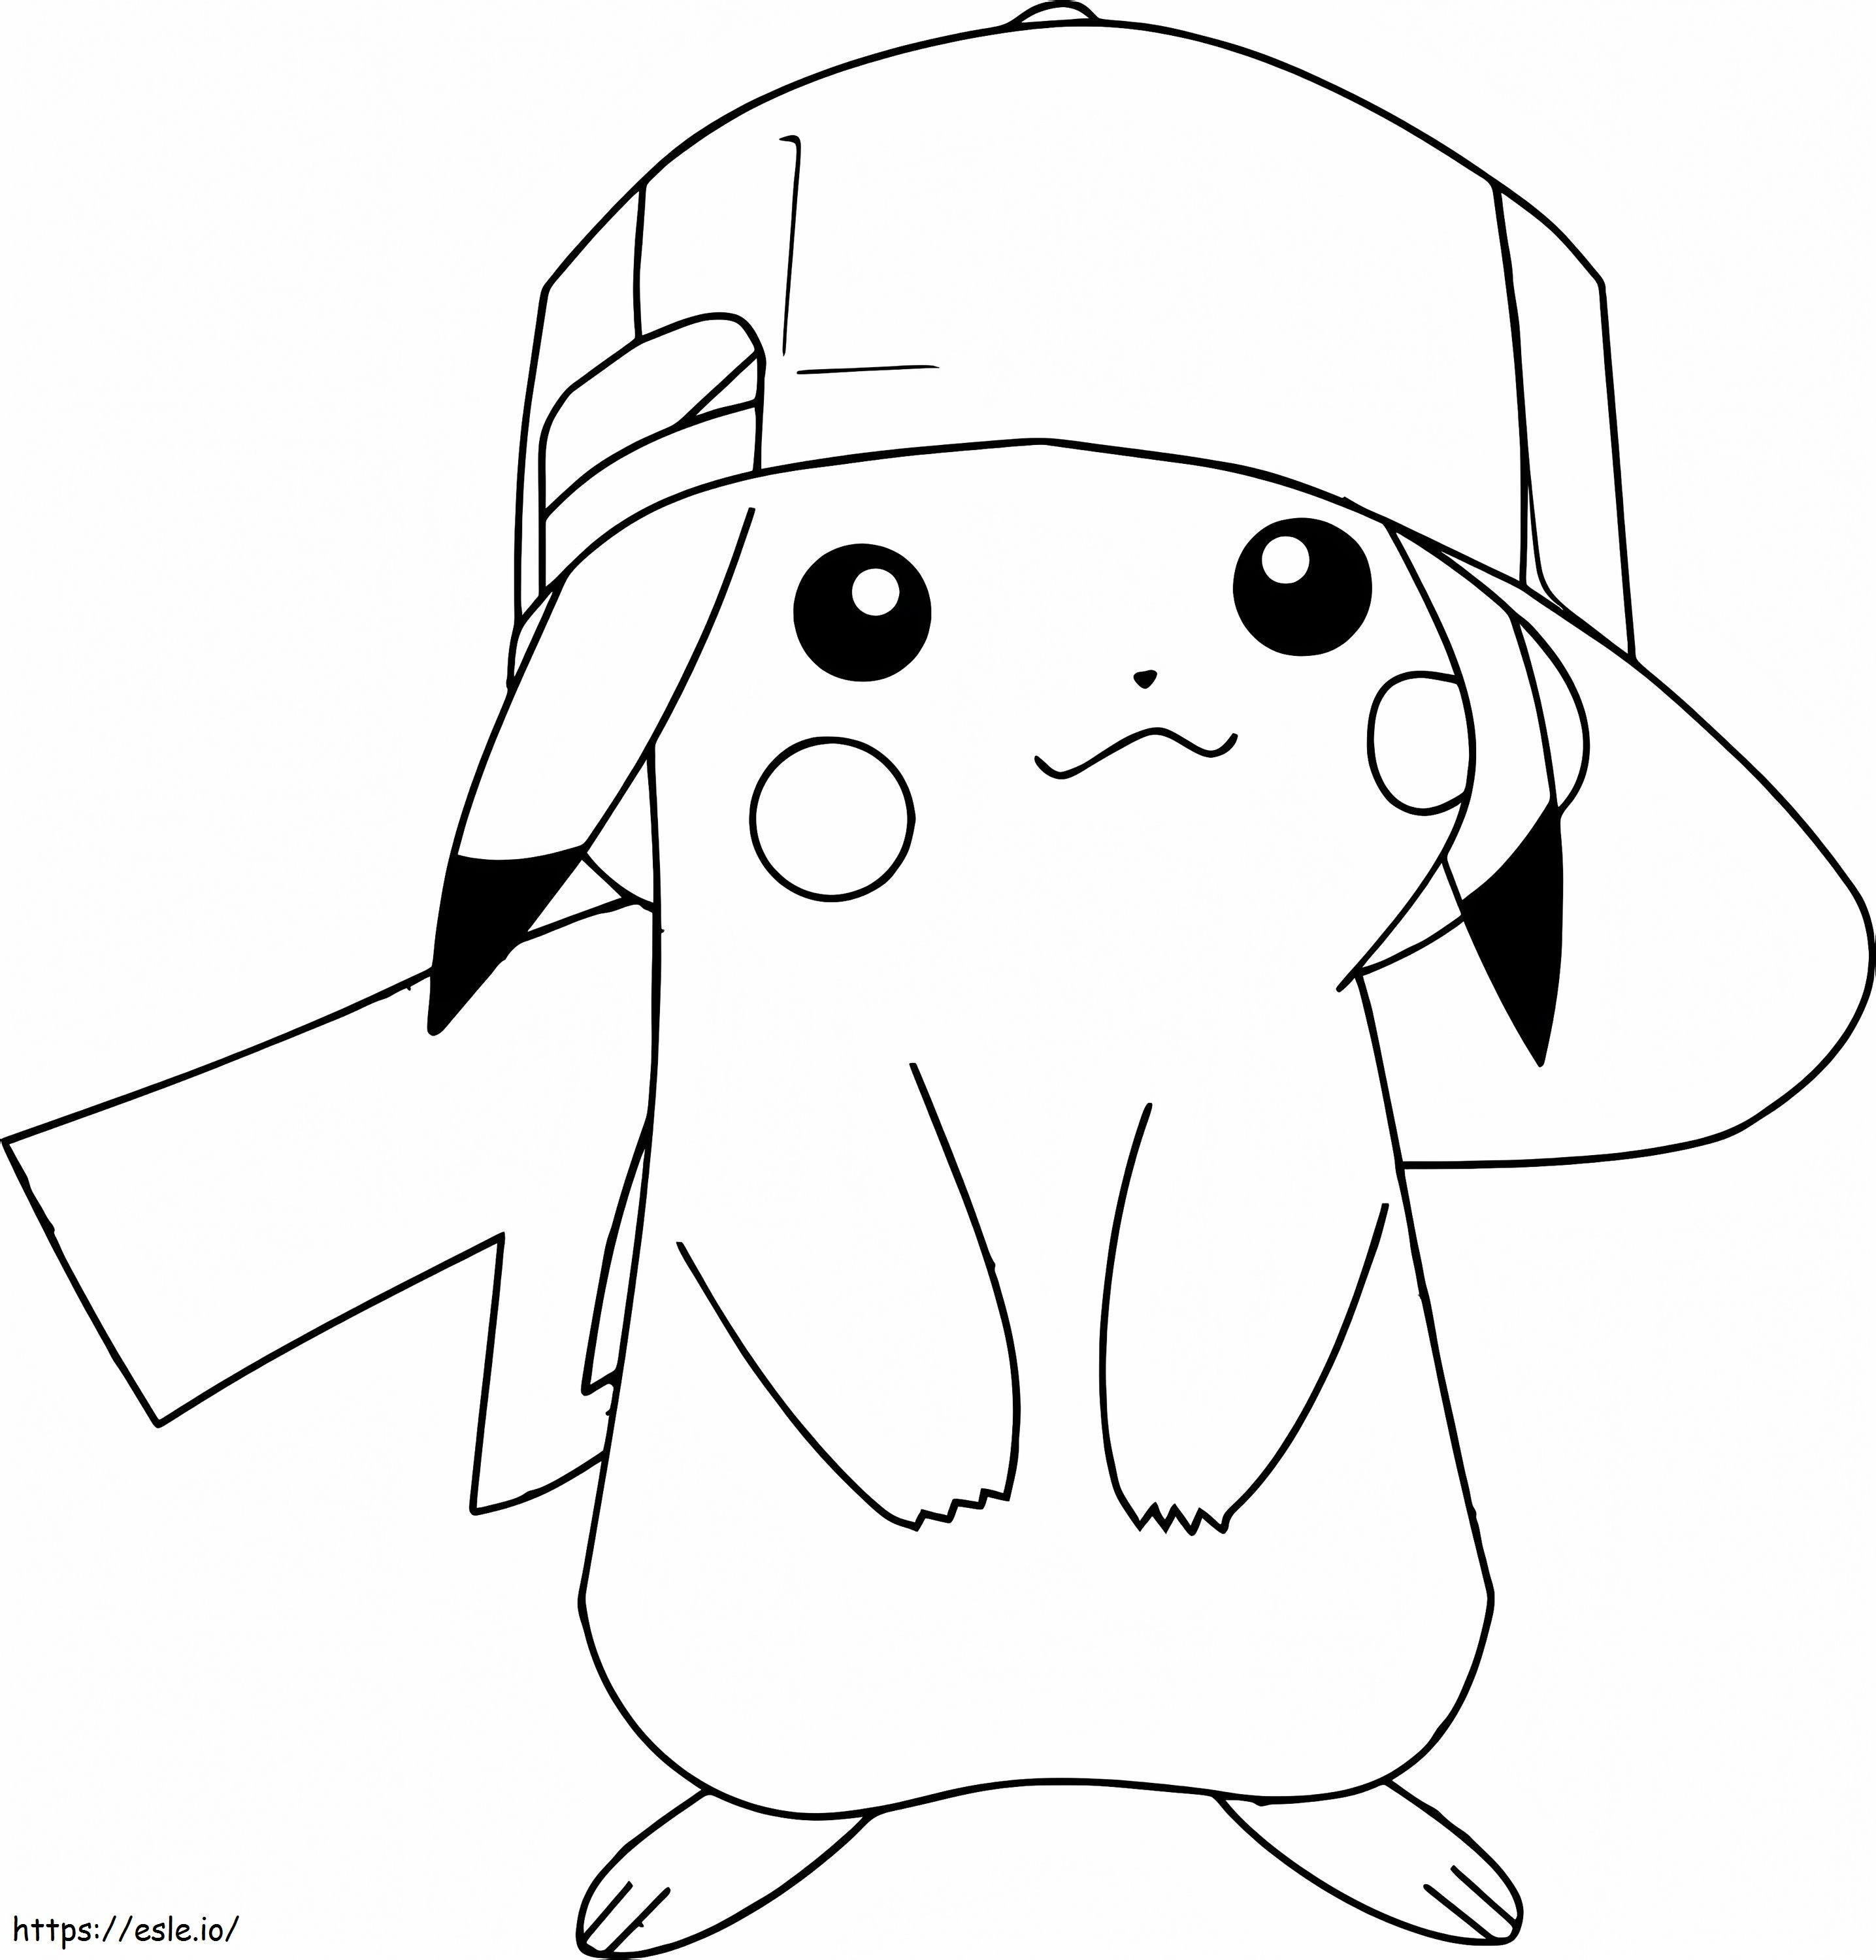 Pikachu purtând o șapcă de colorat